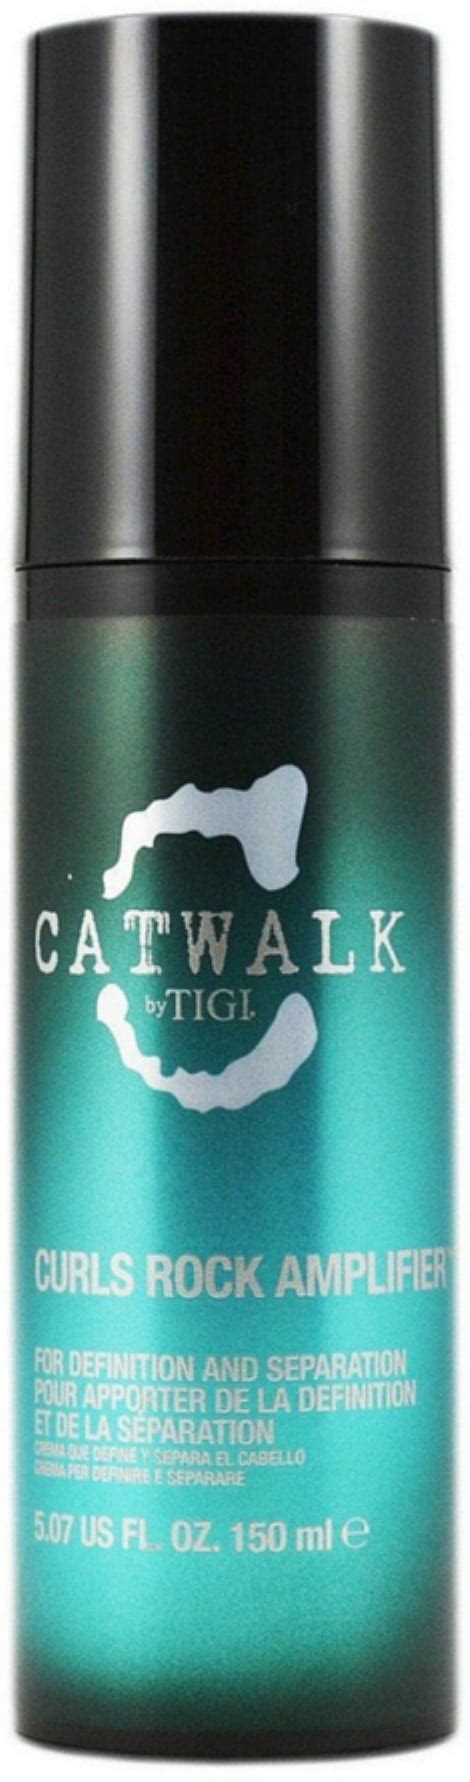 Tigi Catwalk Curls Rock Amplifier Oz Walmart Com Walmart Com